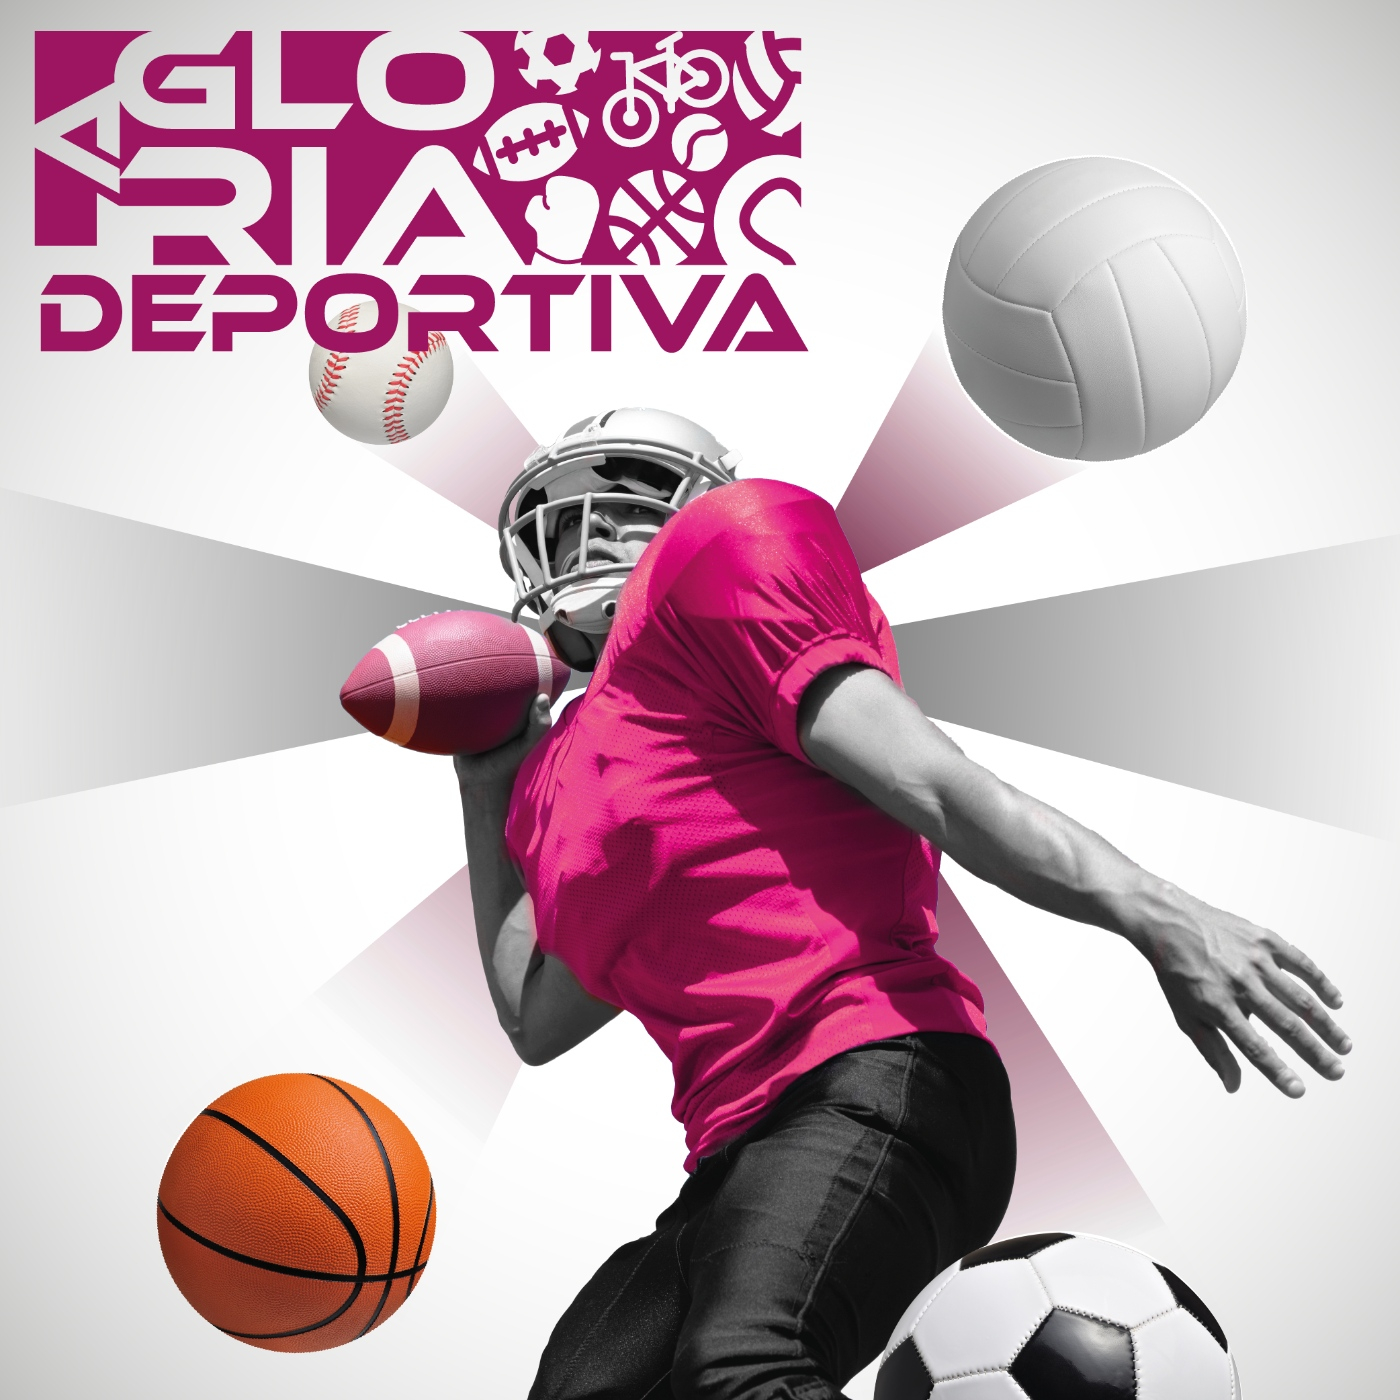 La Gloria Deportiva EP264: Paola Morán logra marca a Juegos Olímpicos de París 2024 – La Gloria Deportiva – Podcast en iVoox